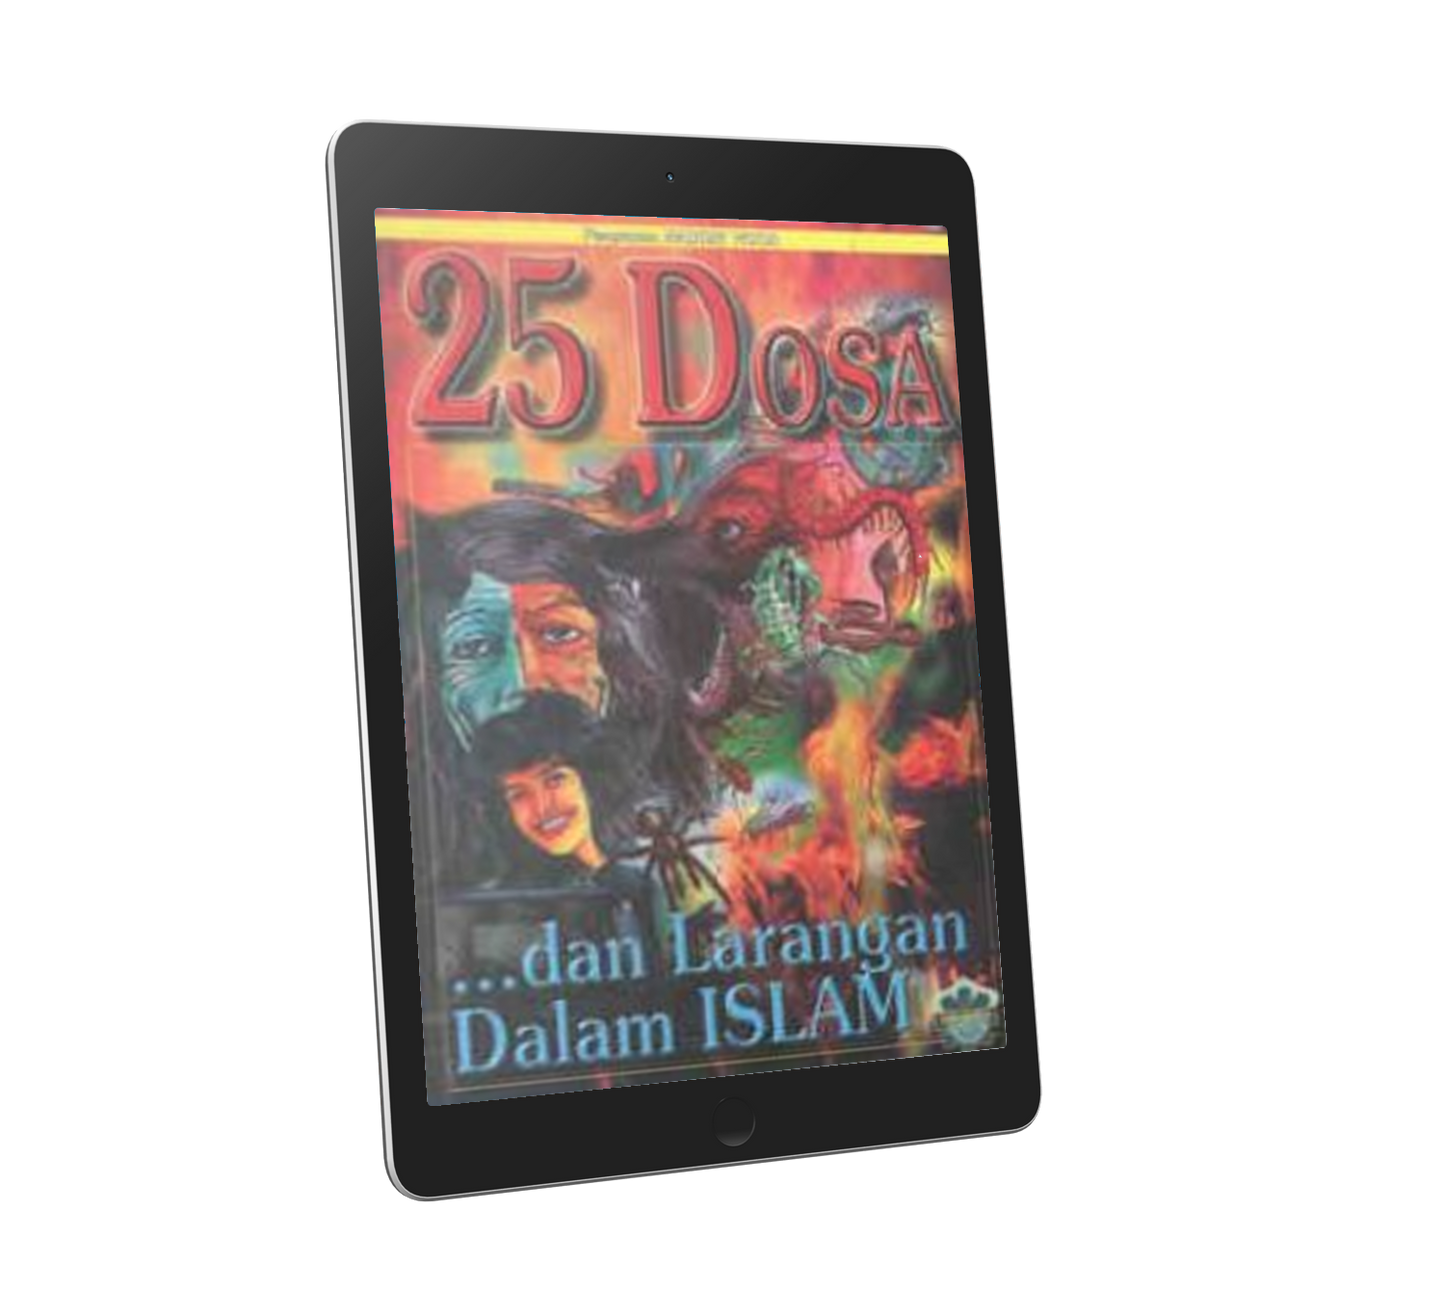 25 Dosa dan Larangan Dalam Islam